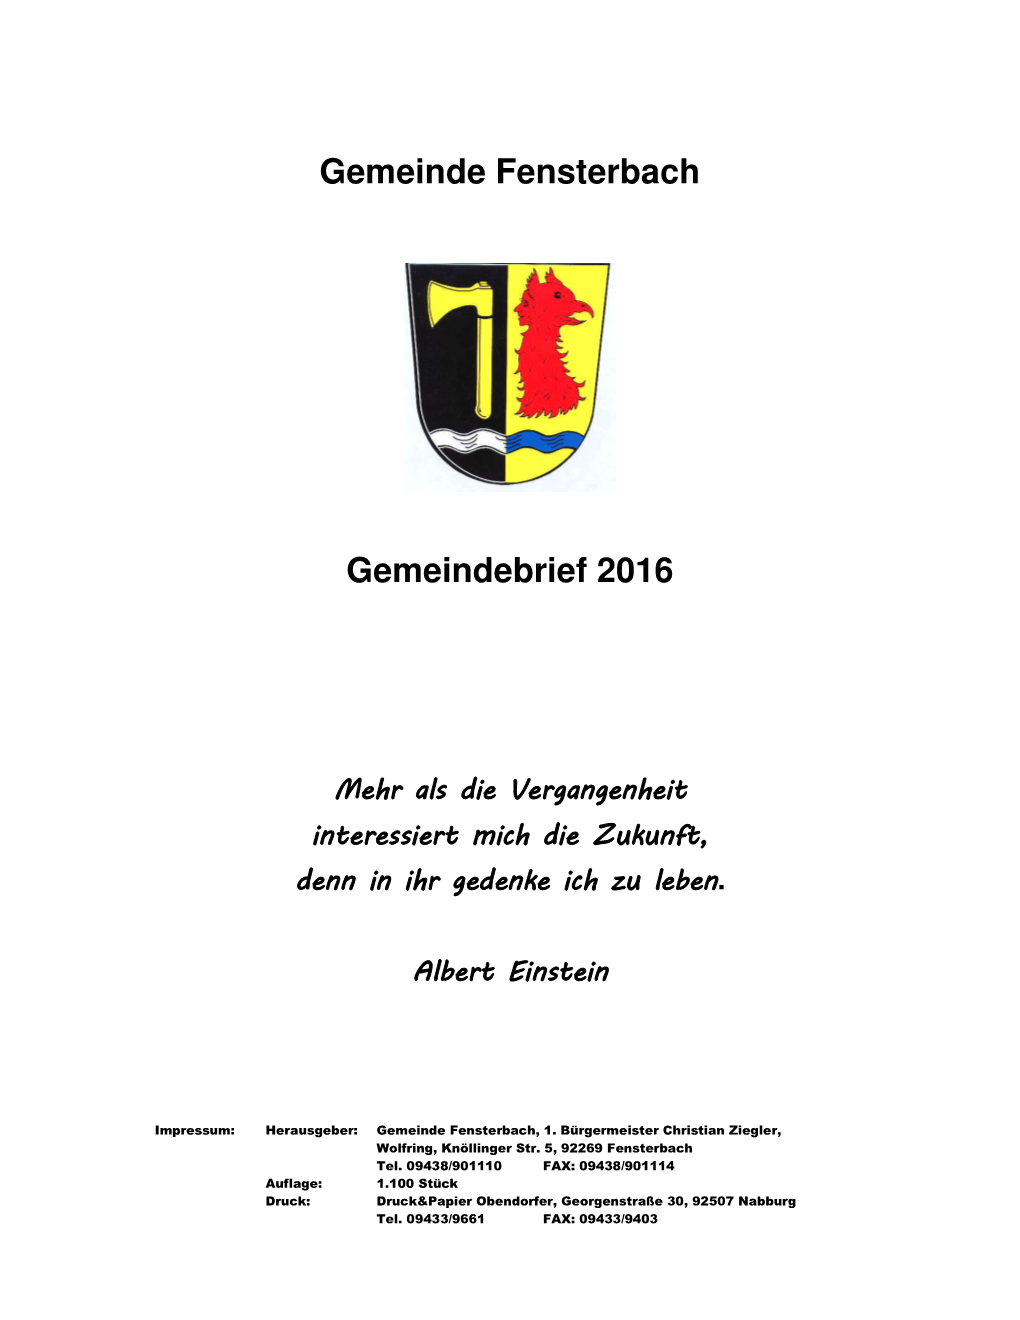 Gemeinde Fensterbach Gemeindebrief 2016